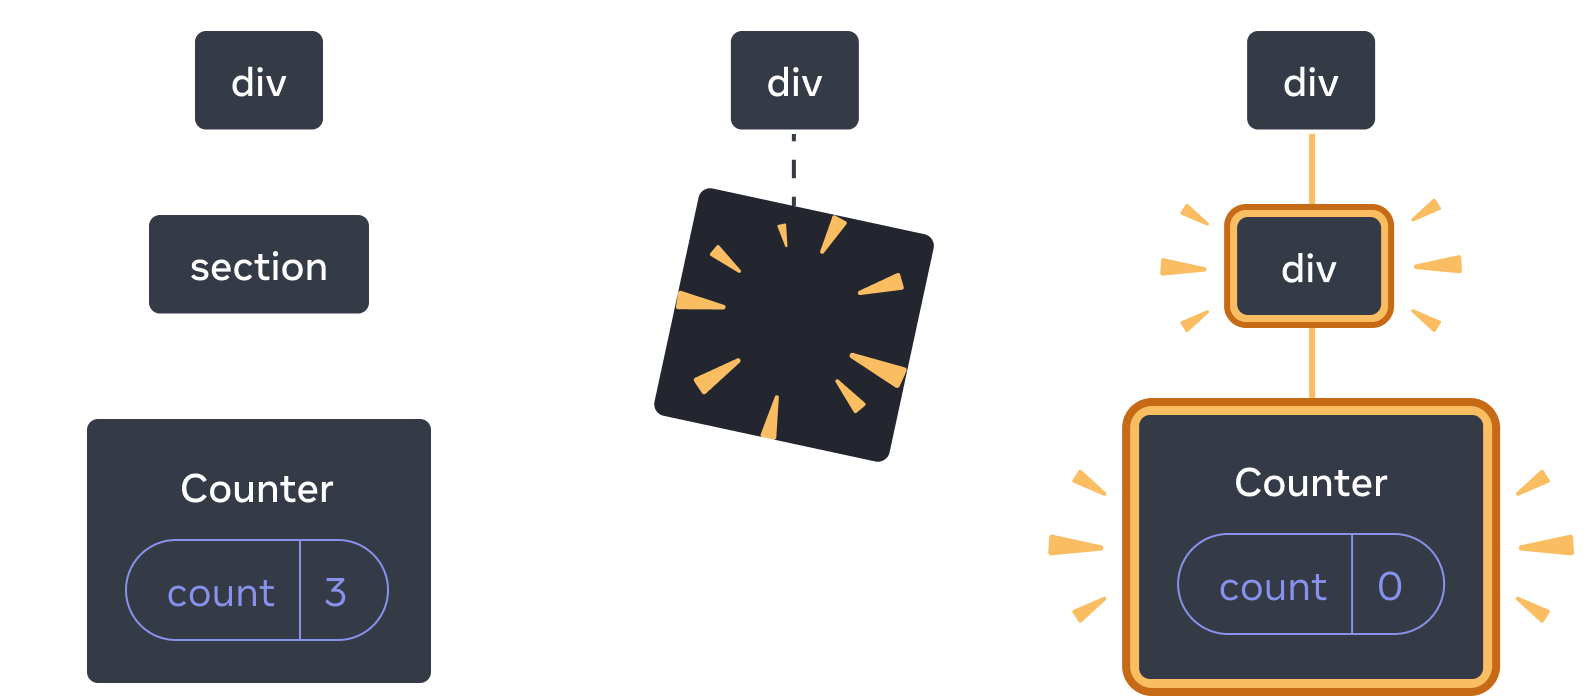 矢印で遷移する 3 セクションから構成される図。最初のセクションには React コンポーネントとして 'div' とその子である 'section' がある。さらにその子に 'Counter' があり、'count' の state ボックスは 3 となっている。中央のセクションにも親の 'div' があるが、子が消失している。最後のセクションにも 'div' があり、今度は別の 'div' が新しい子となってハイライトされている。さらにその子に 'Counter' があって黄色でハイライトされており、その 'count' の state ボックスは 0 となっている。